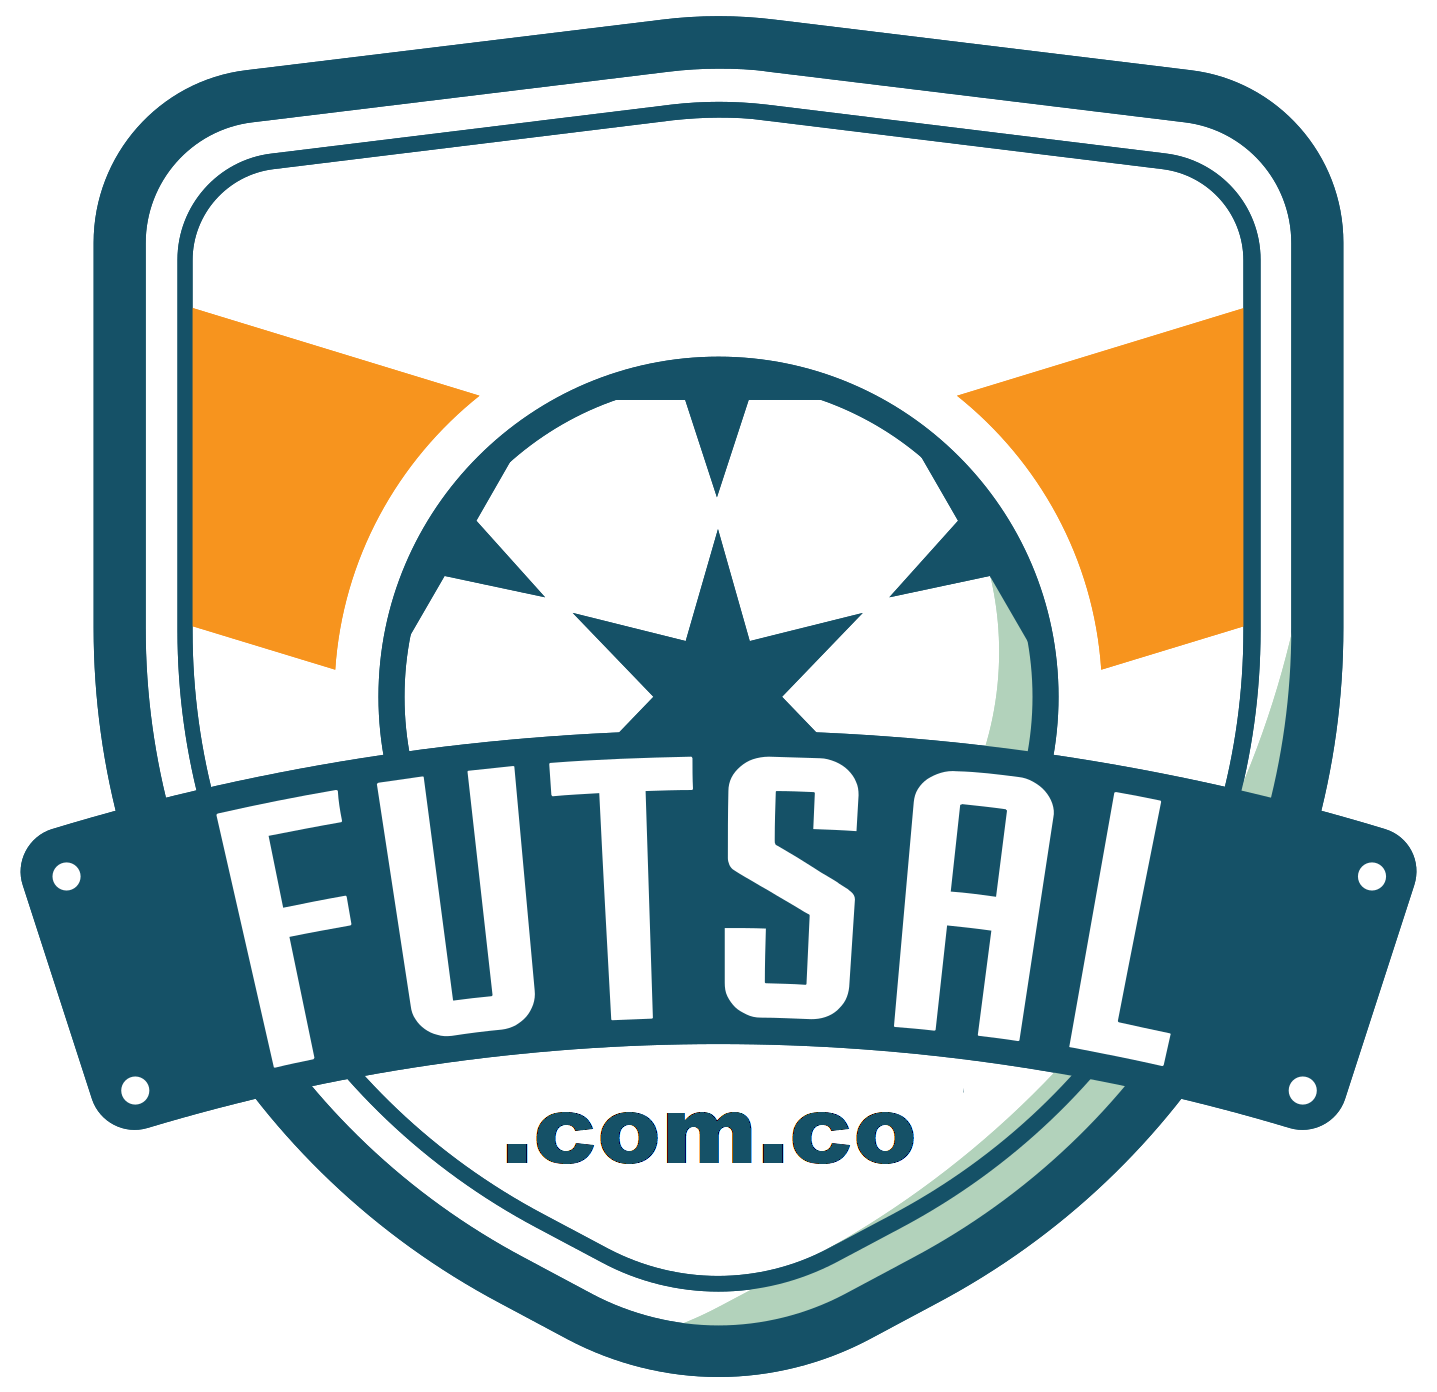 Futsal.com.co